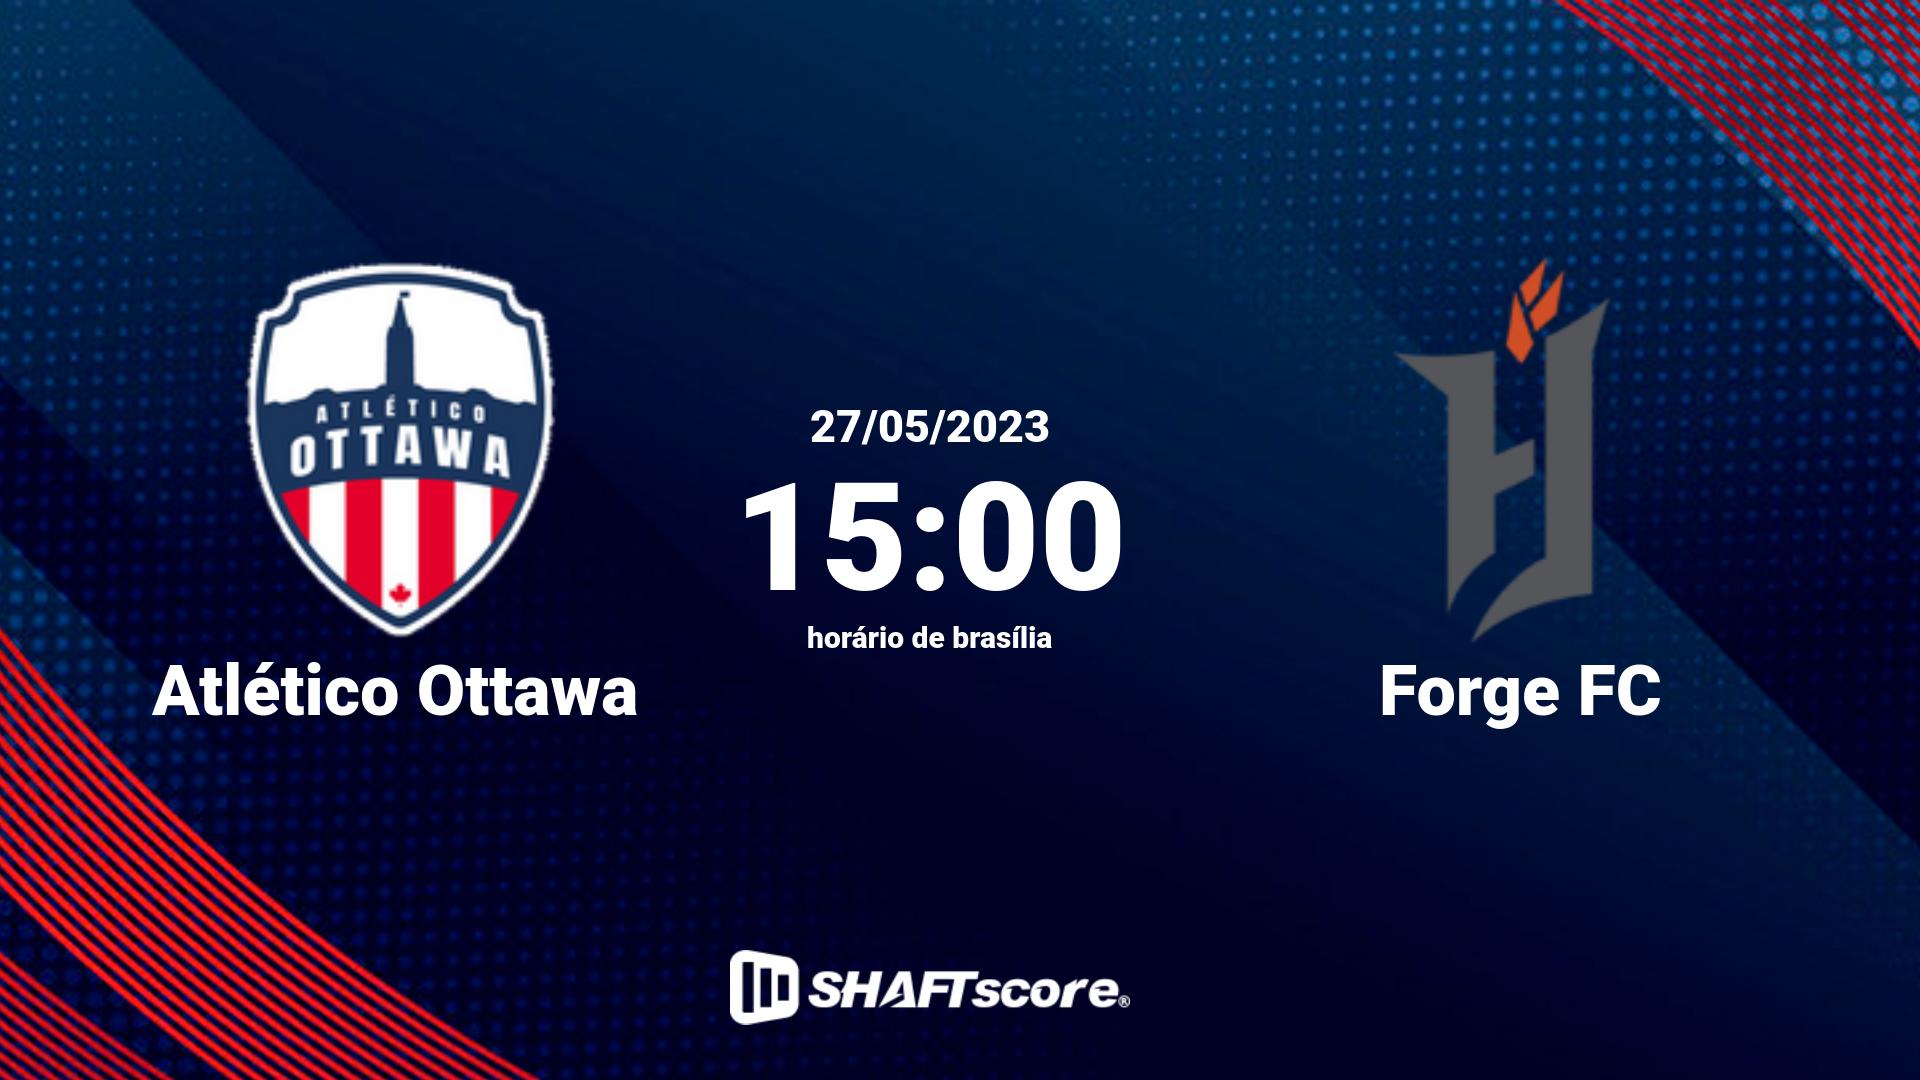 Estatísticas do jogo Atlético Ottawa vs Forge FC 27.05 15:00